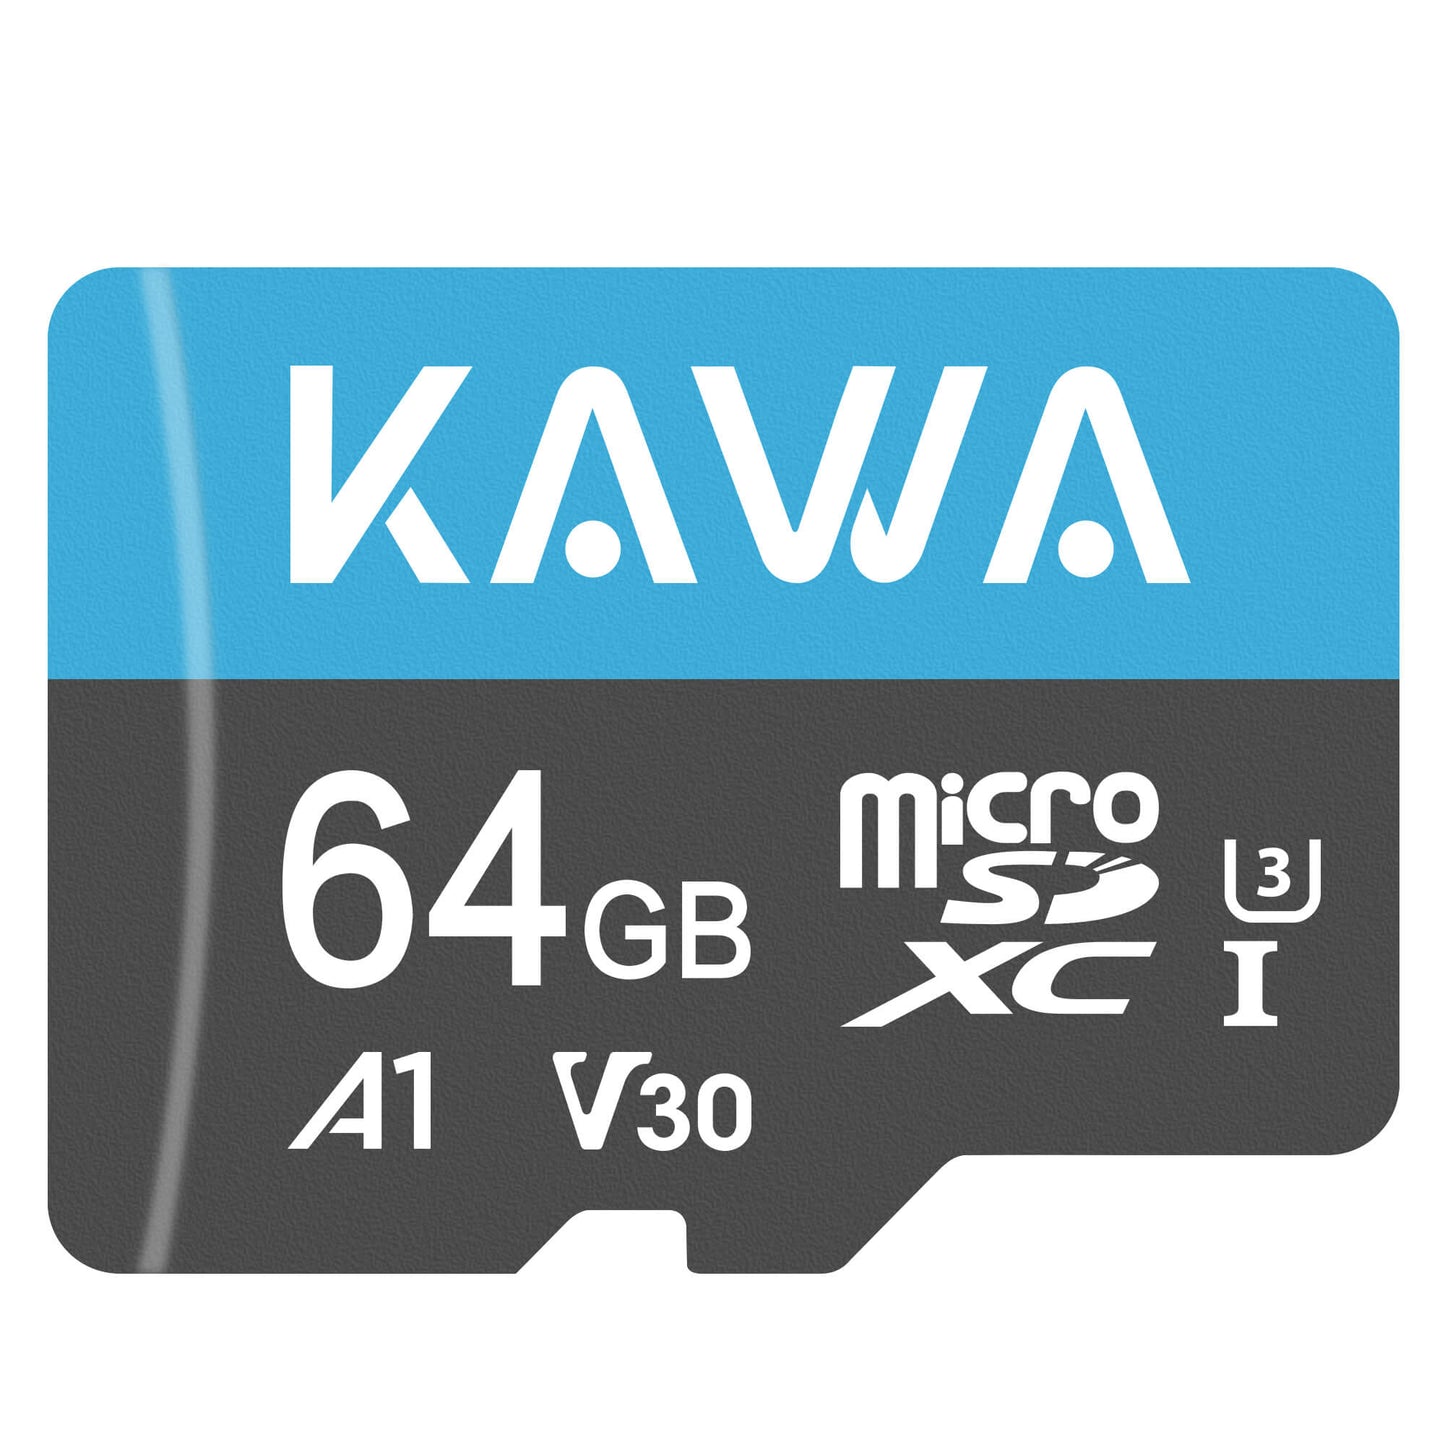 KAWA 64GB Micro SD Card | Memory Card for KAWA All Dash Cam, Baby Monitor, and IP Camera.